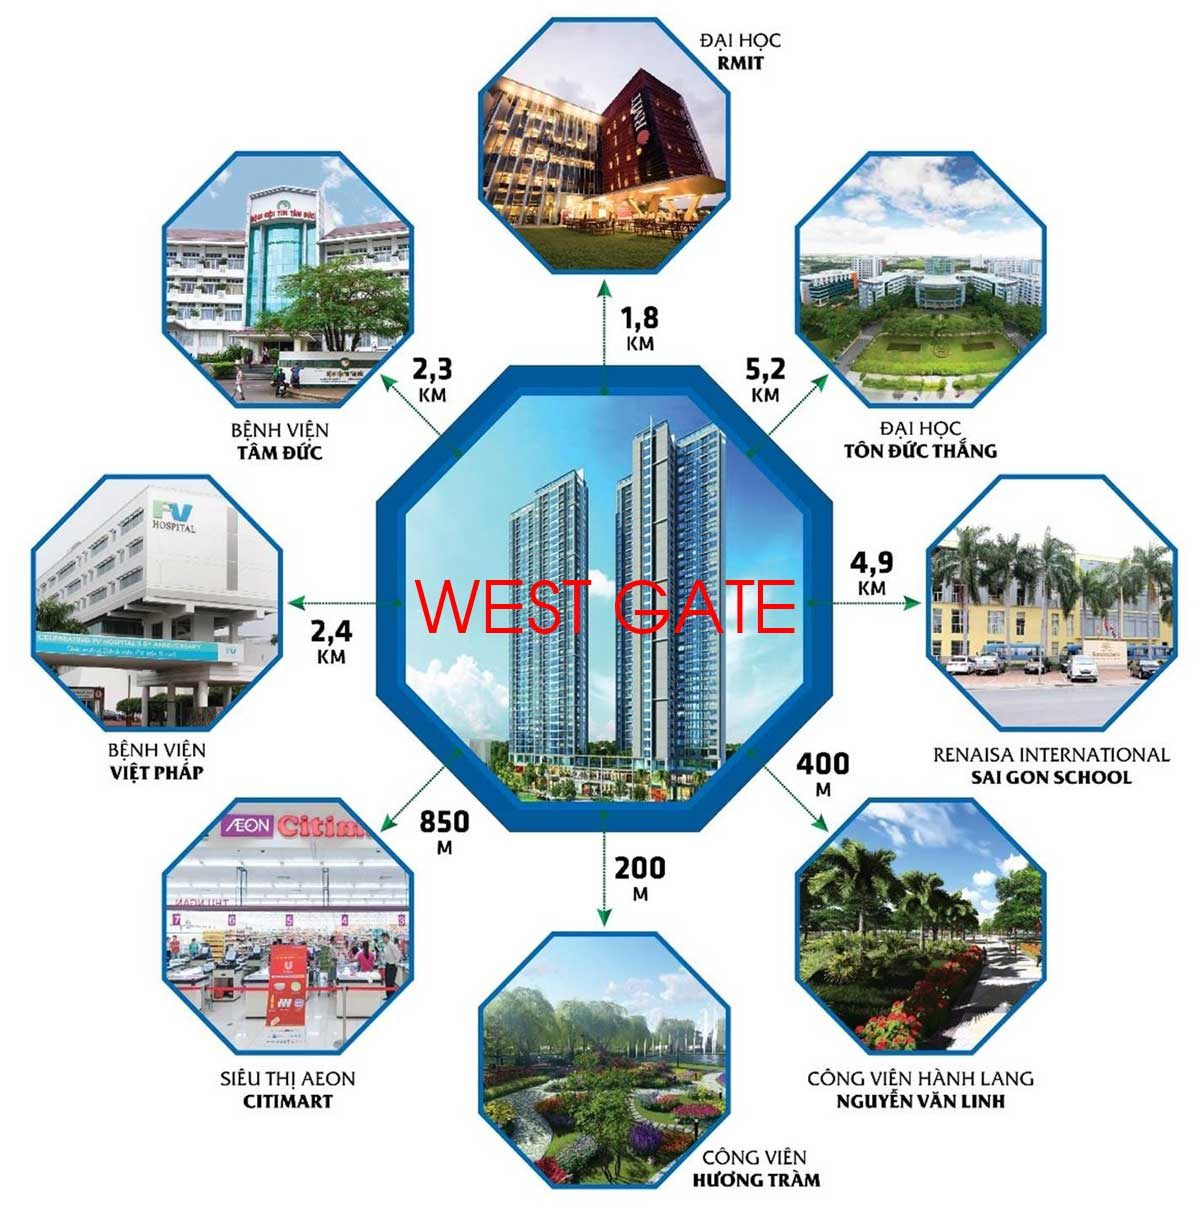 SHOPHOUSE Westgate - Ngay trung tâm hành chính - Kinh doanh đa ngành nghề - Nhận muôn vàn ưu đãi 6